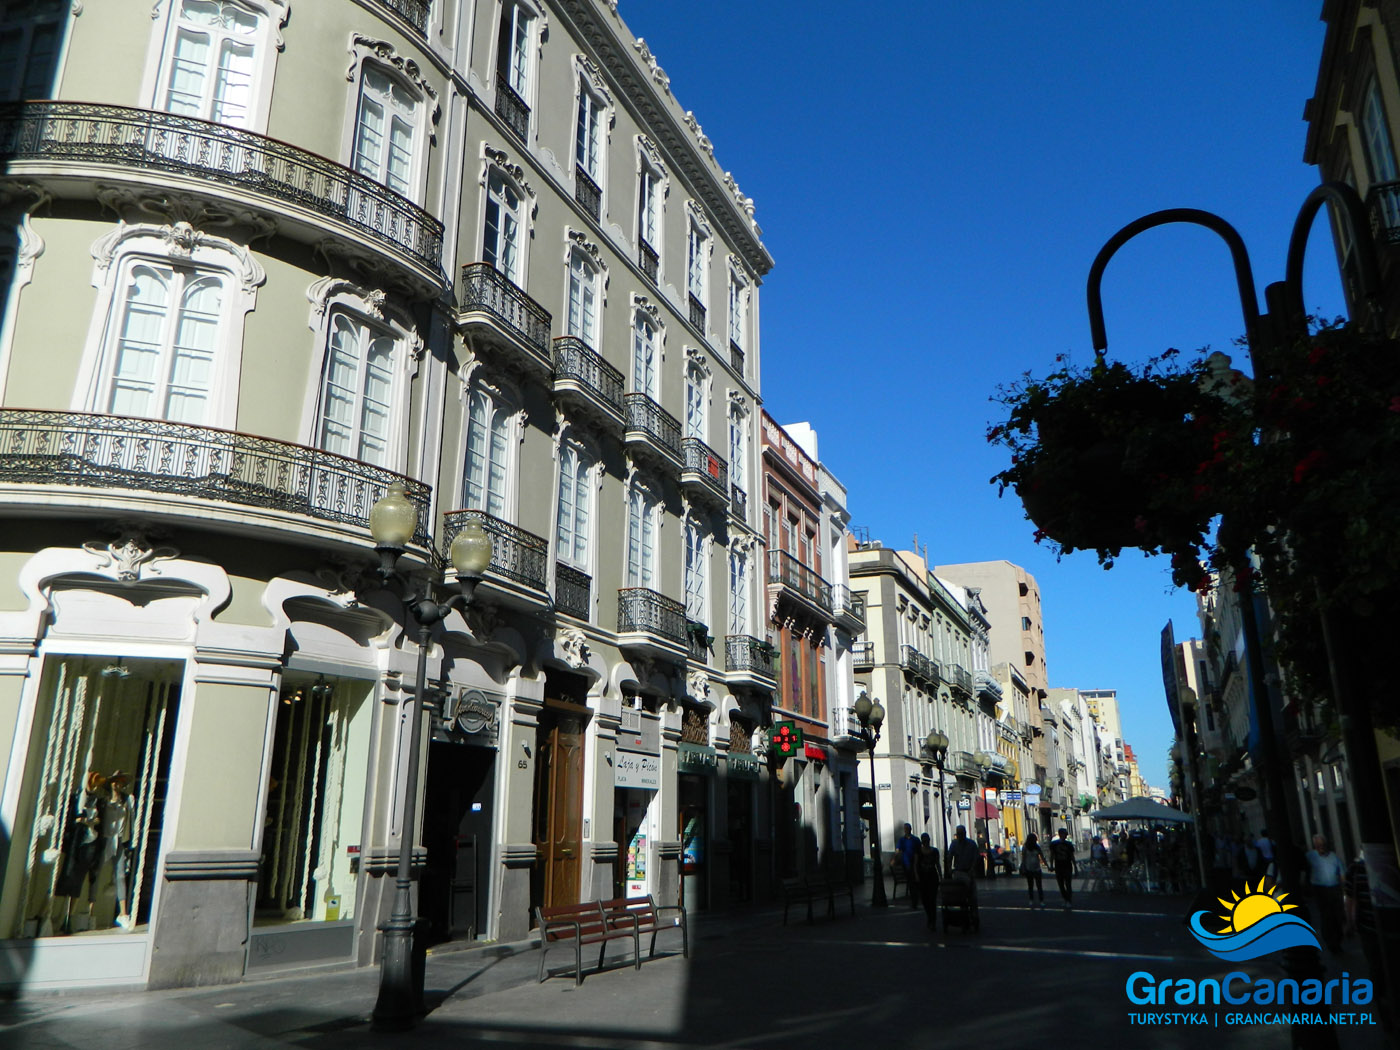 Calle Mayor de Trana - Las Palmas